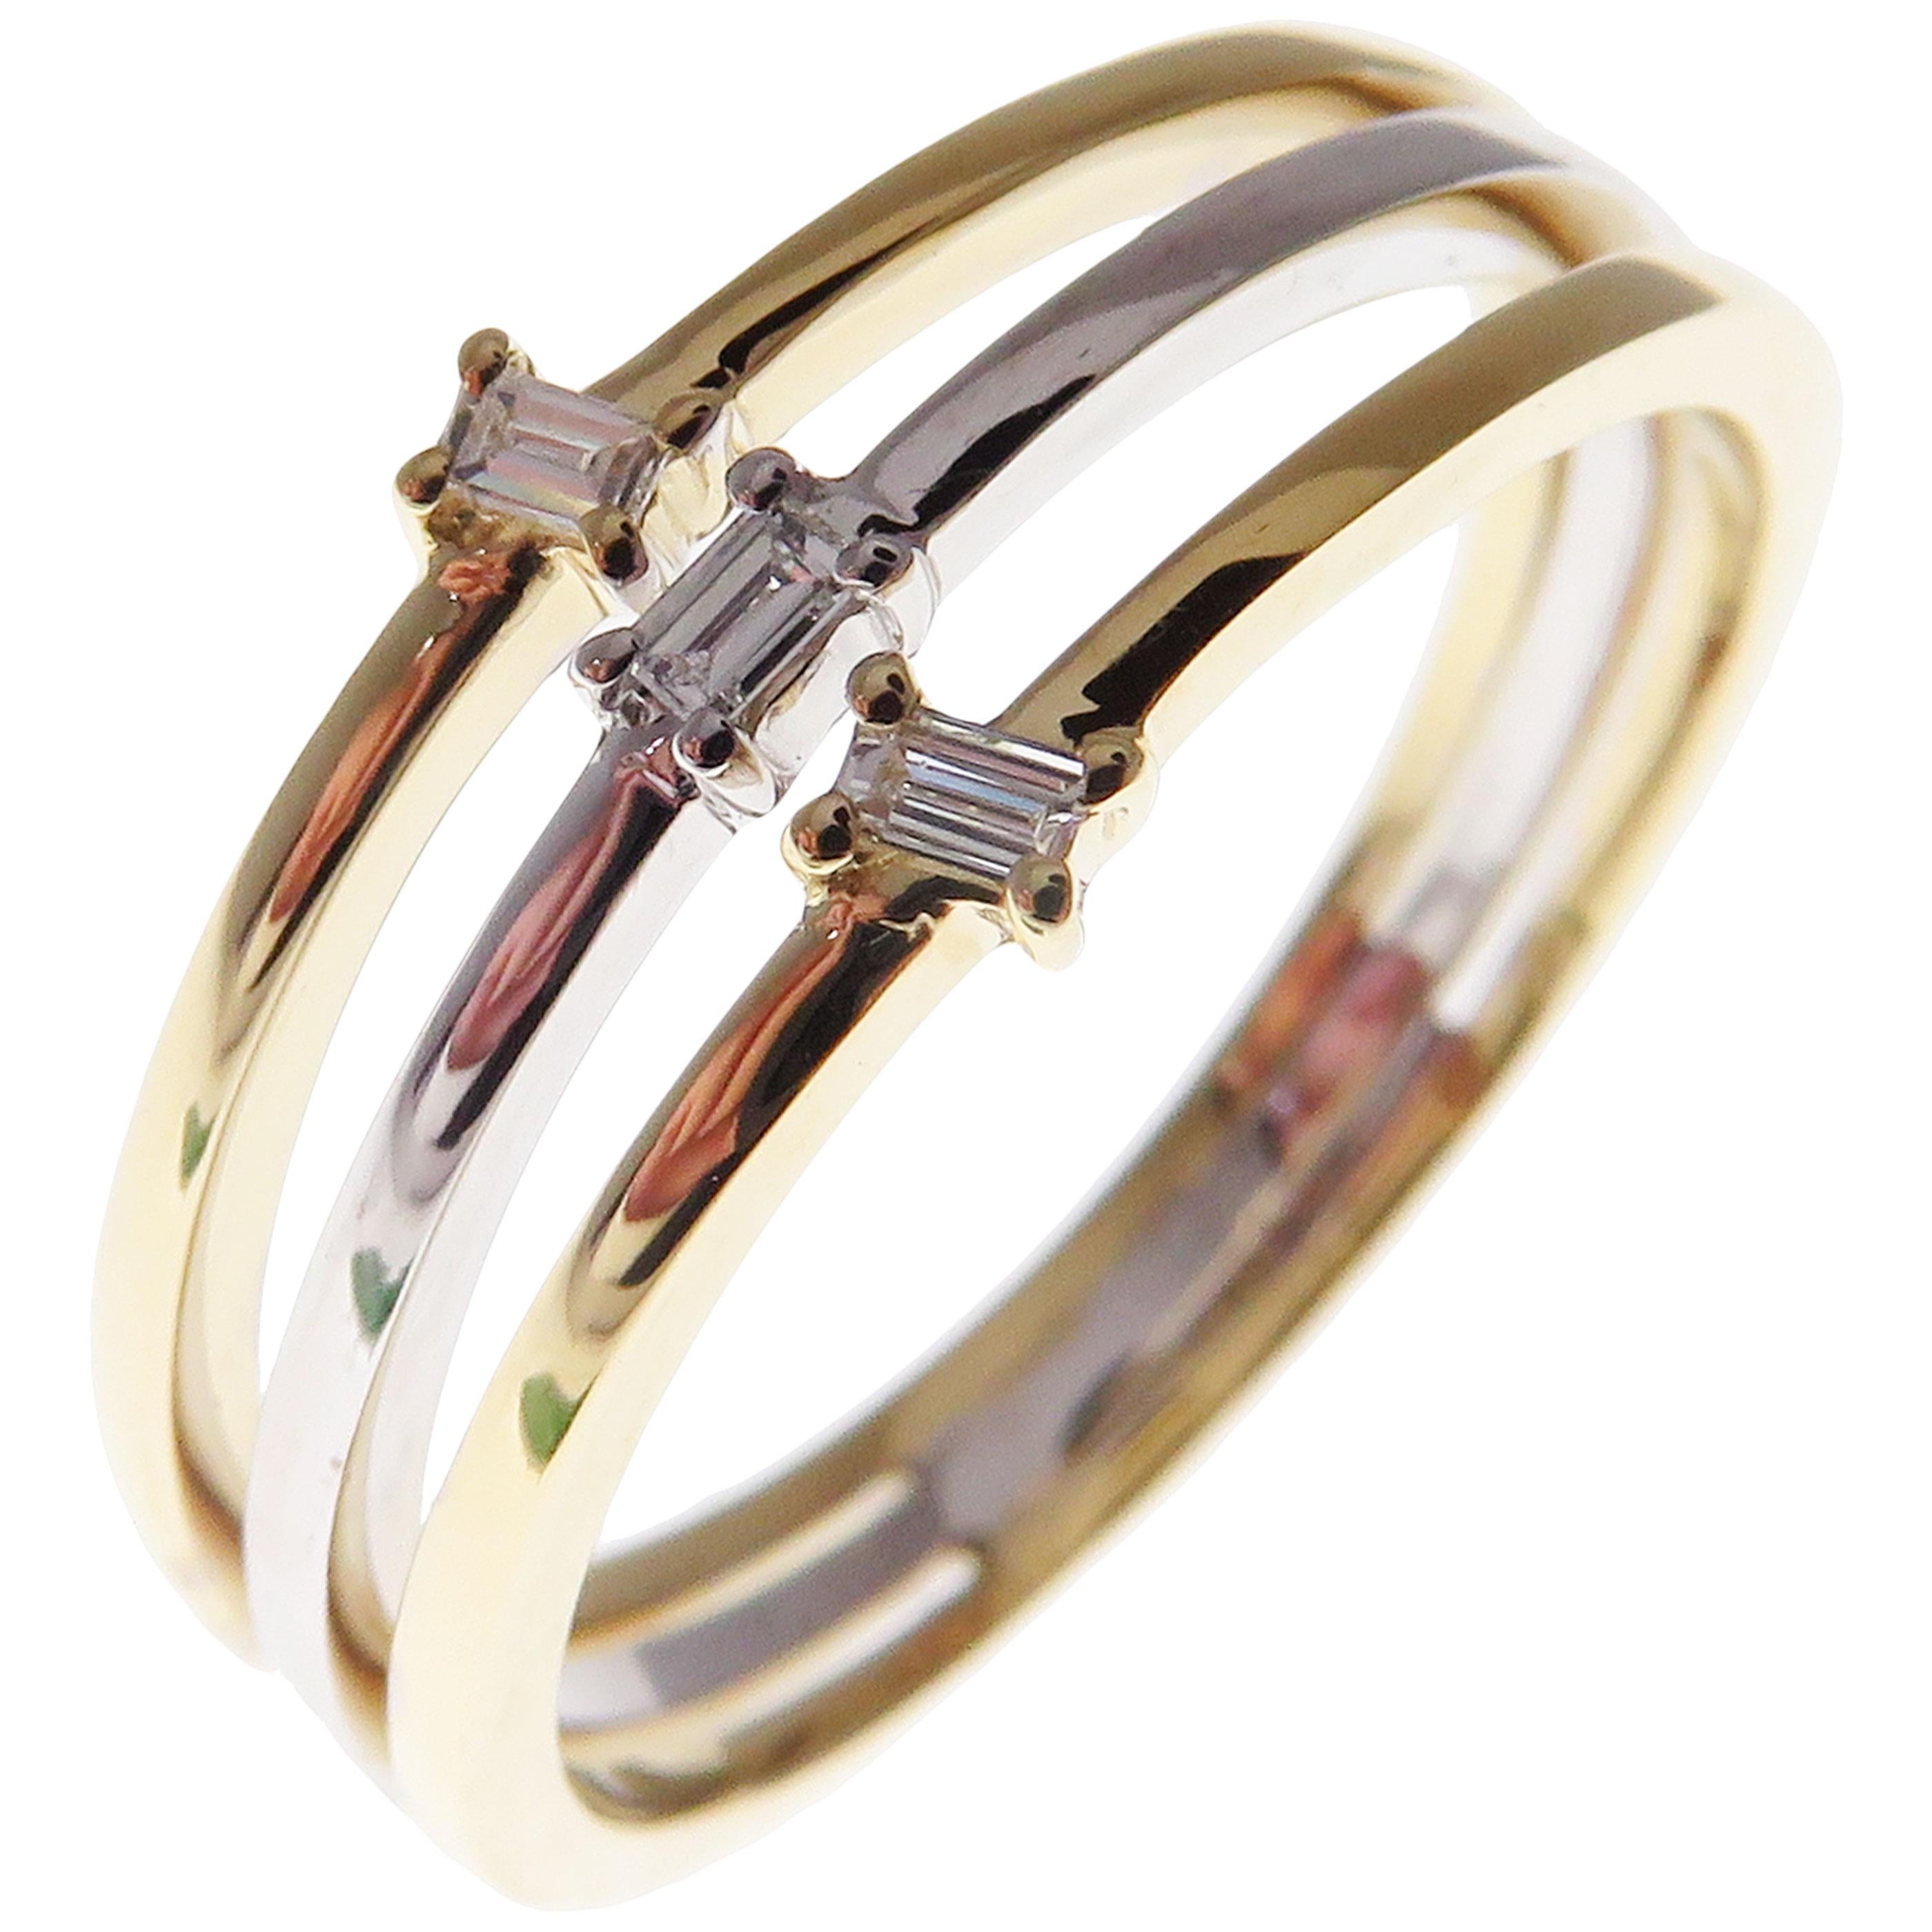 Dieser trendige mehrschichtige Ring ist aus 18 Karat zweifarbigem Weißgold und Gelbgold gefertigt und mit 3 weißen Baguette-Diamanten von insgesamt 0,08 Karat besetzt.
Ungefähres Gesamtgewicht 3,34 Gramm.
Standard Ringgröße 7
SI-G Qualität